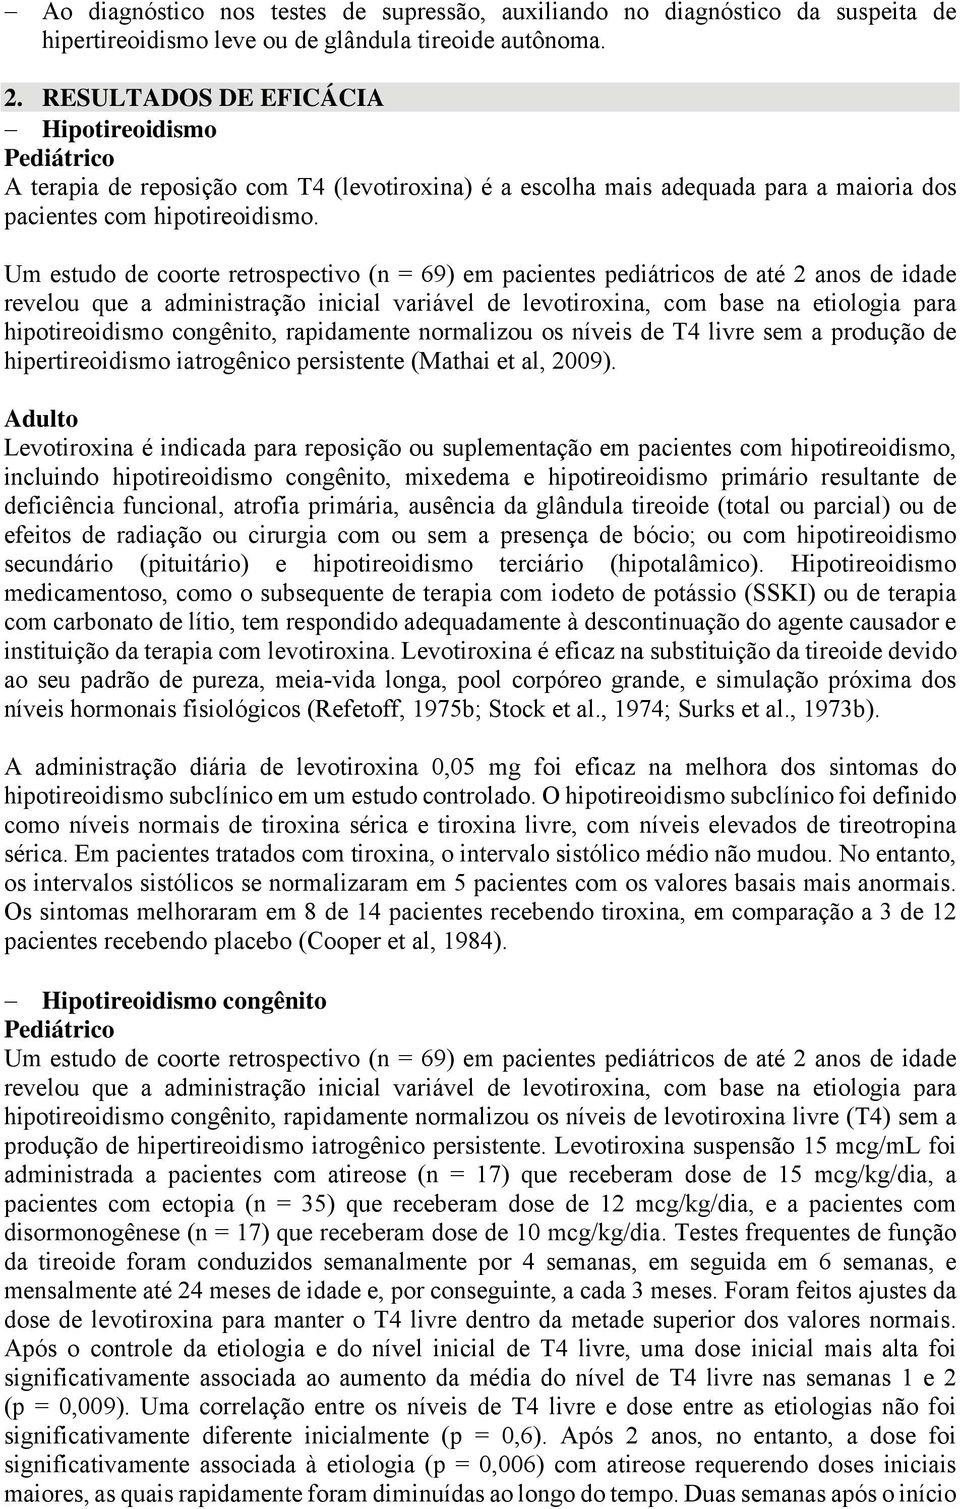 Um estudo de coorte retrospectivo (n = 69) em pacientes pediátricos de até 2 anos de idade revelou que a administração inicial variável de levotiroxina, com base na etiologia para hipotireoidismo